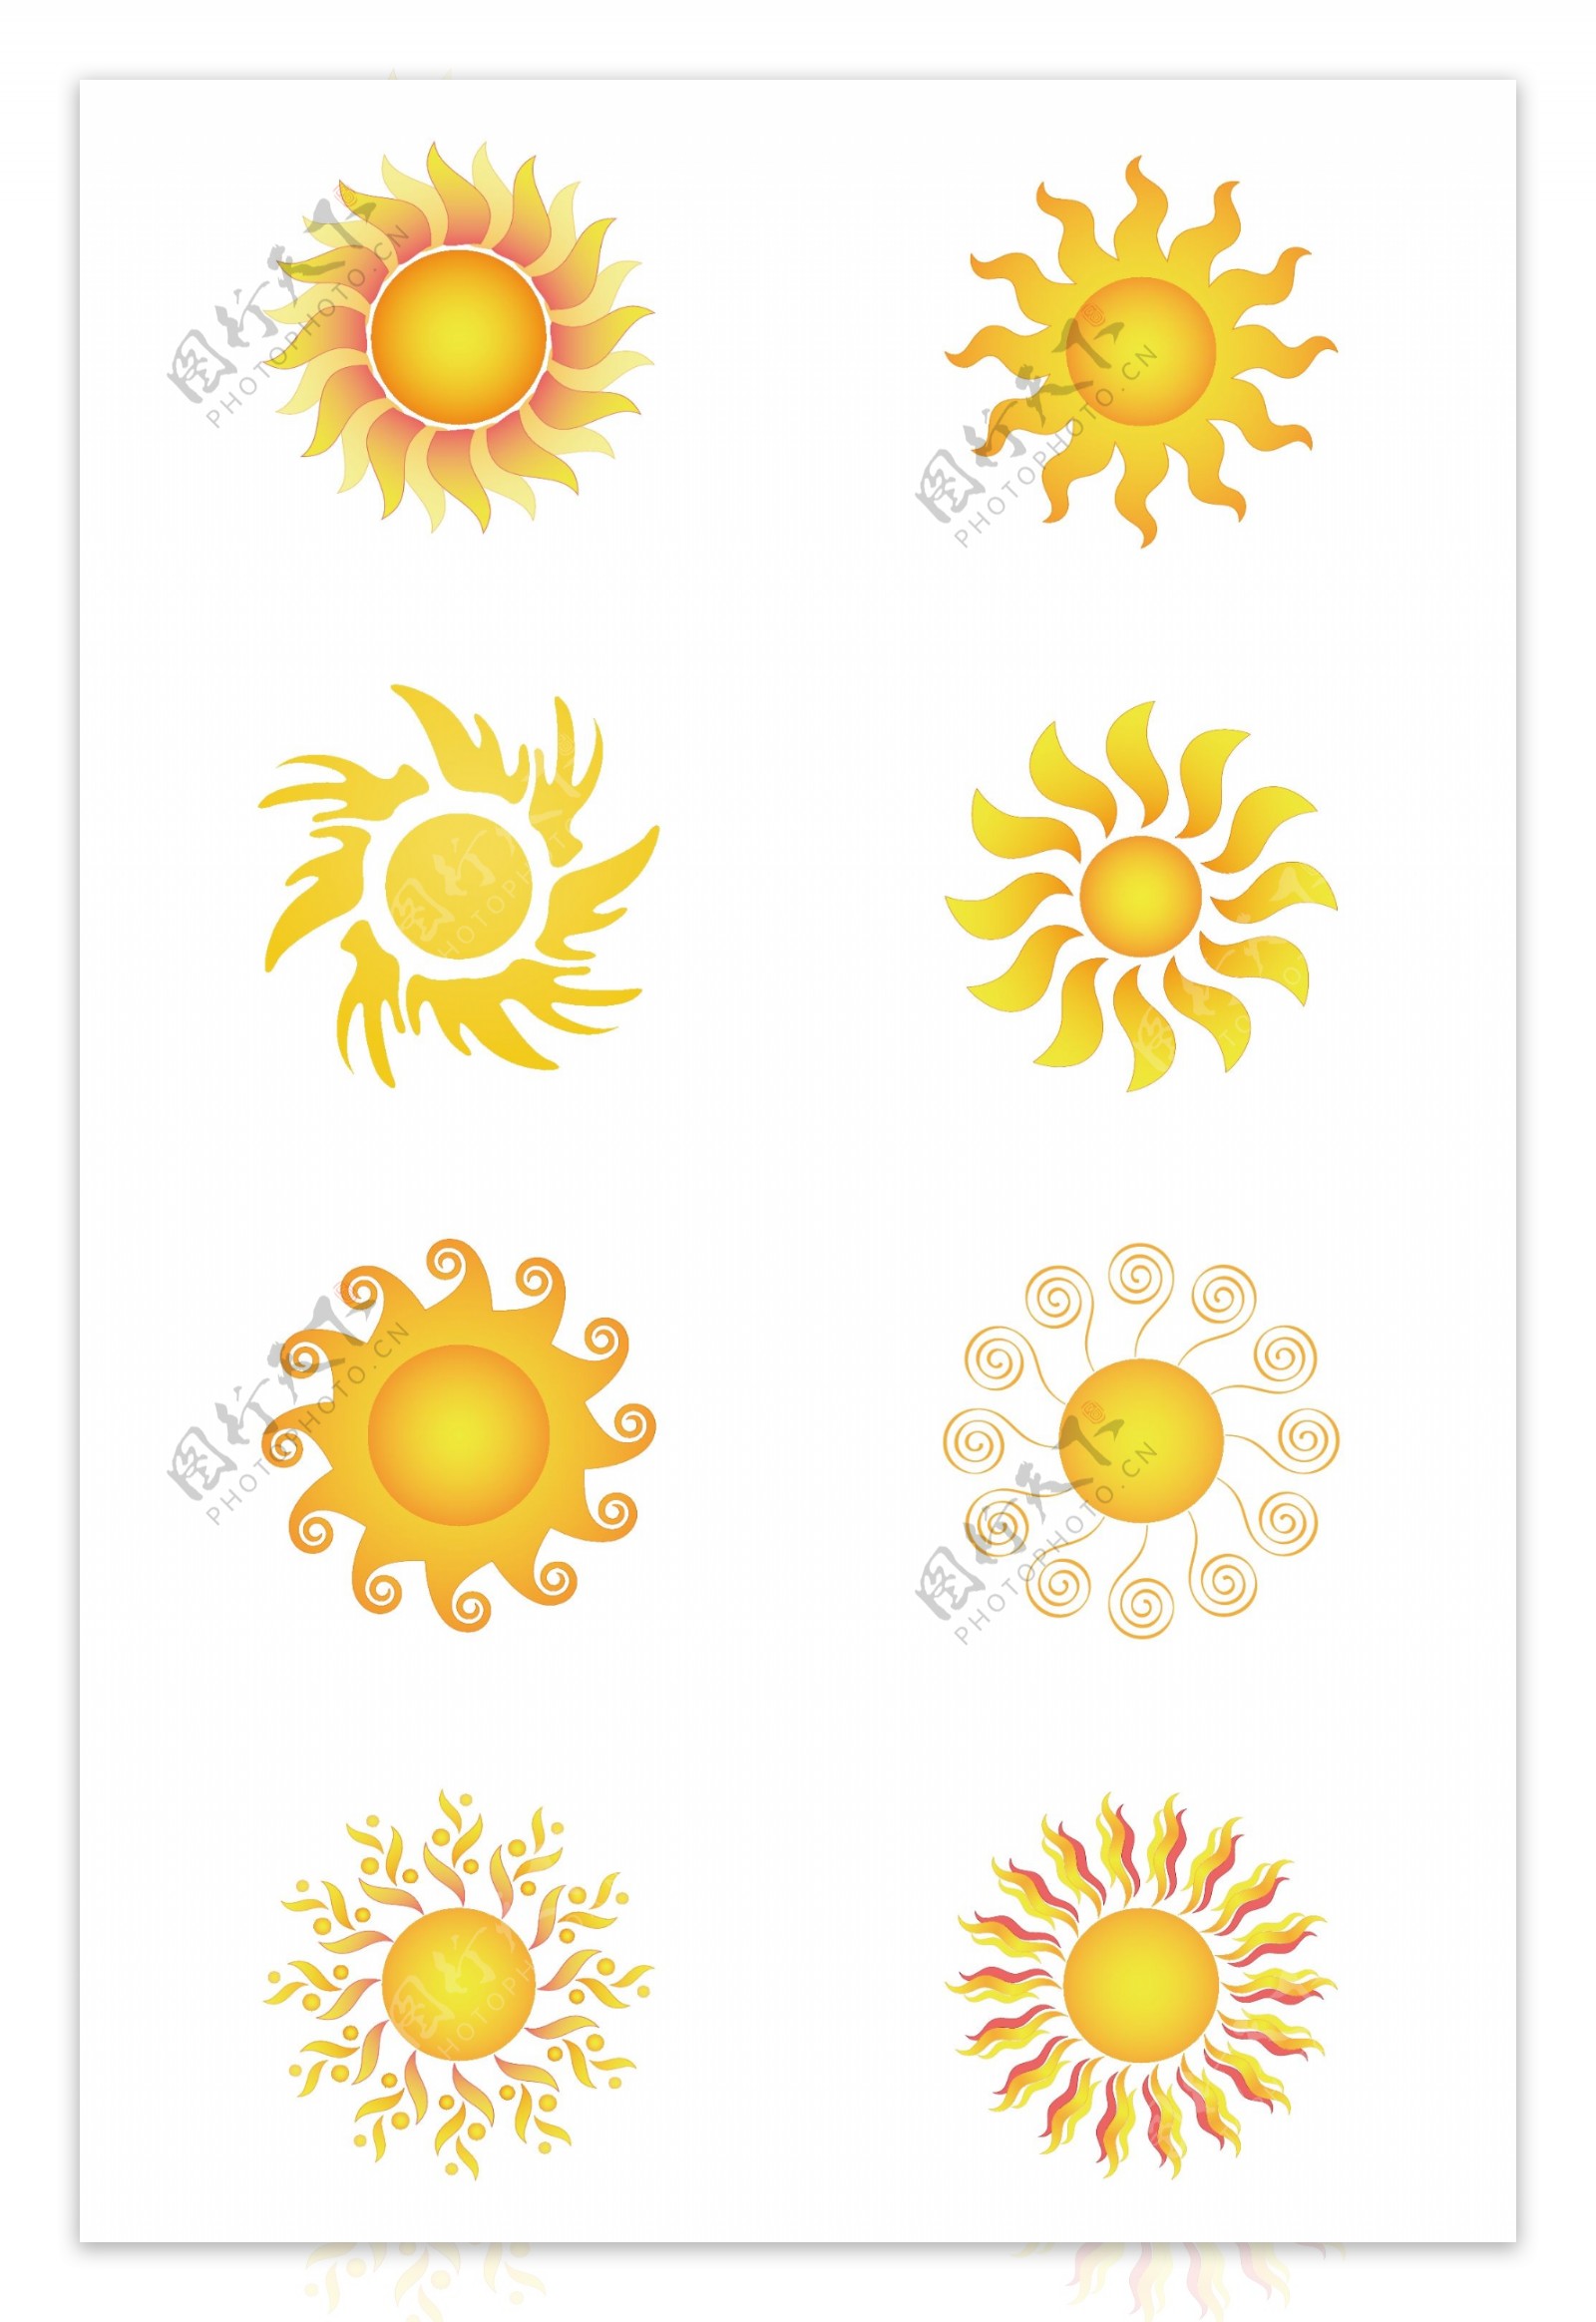 太阳卡通图标